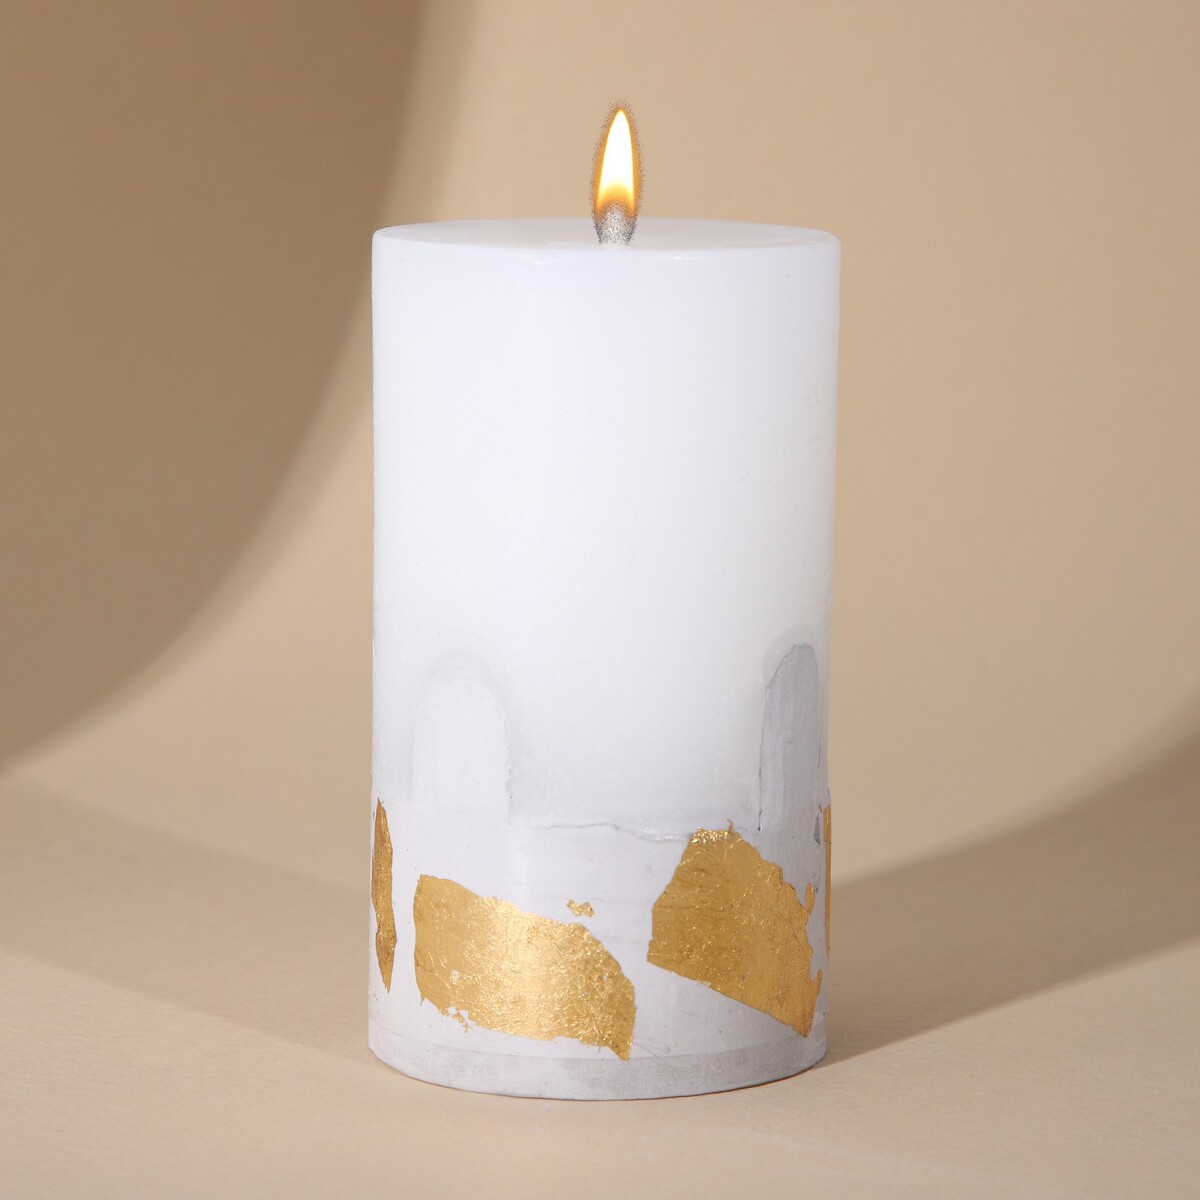 Свеча интерьерная белая с бетоном (поталь), 9,5 х 6 см свеча интерьерная женская фигура белая